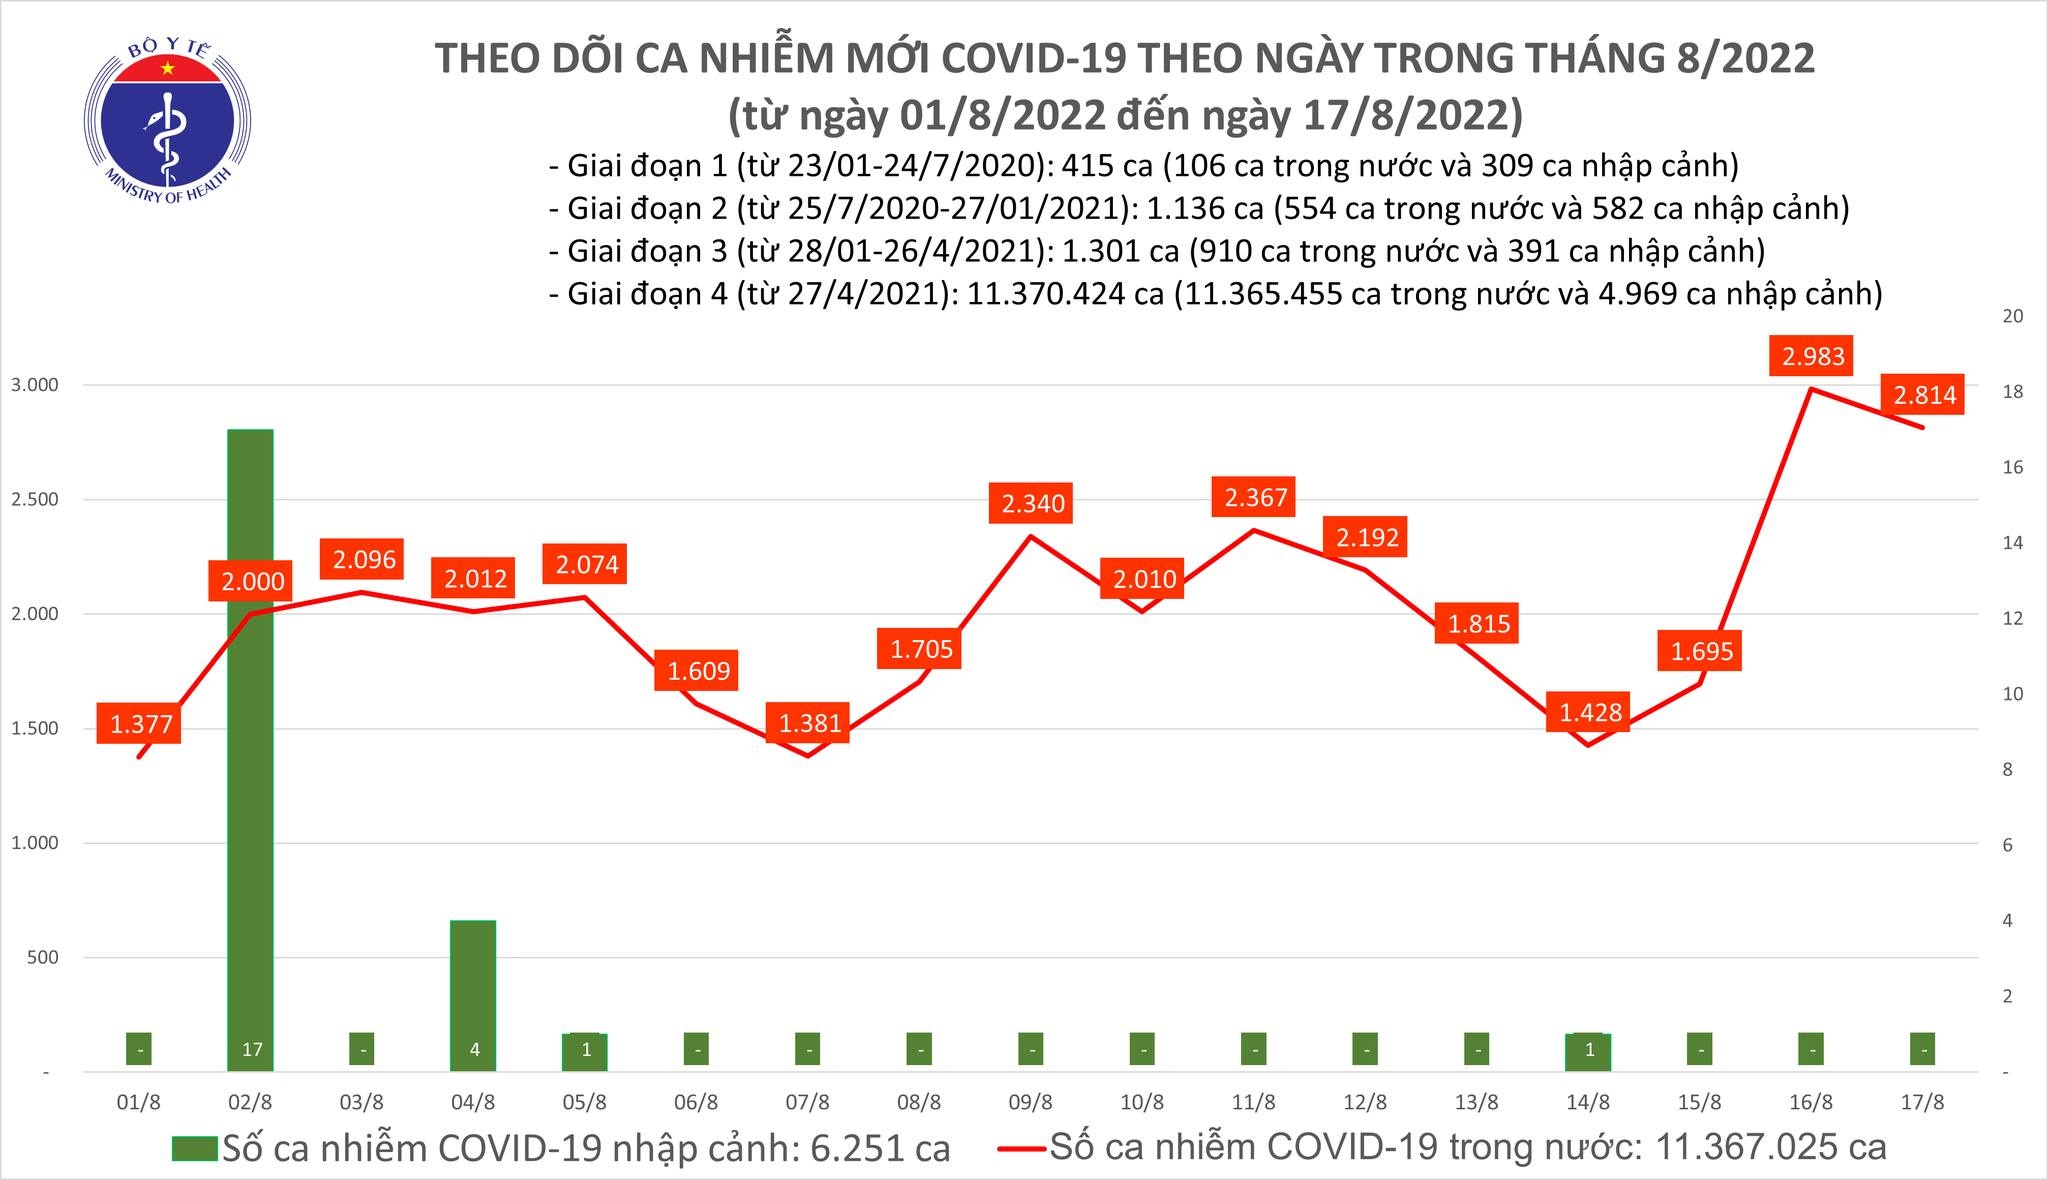 Việt Nam ghi nhận 2.814 ca mắc mới COVID-19 trong ngày 17/8